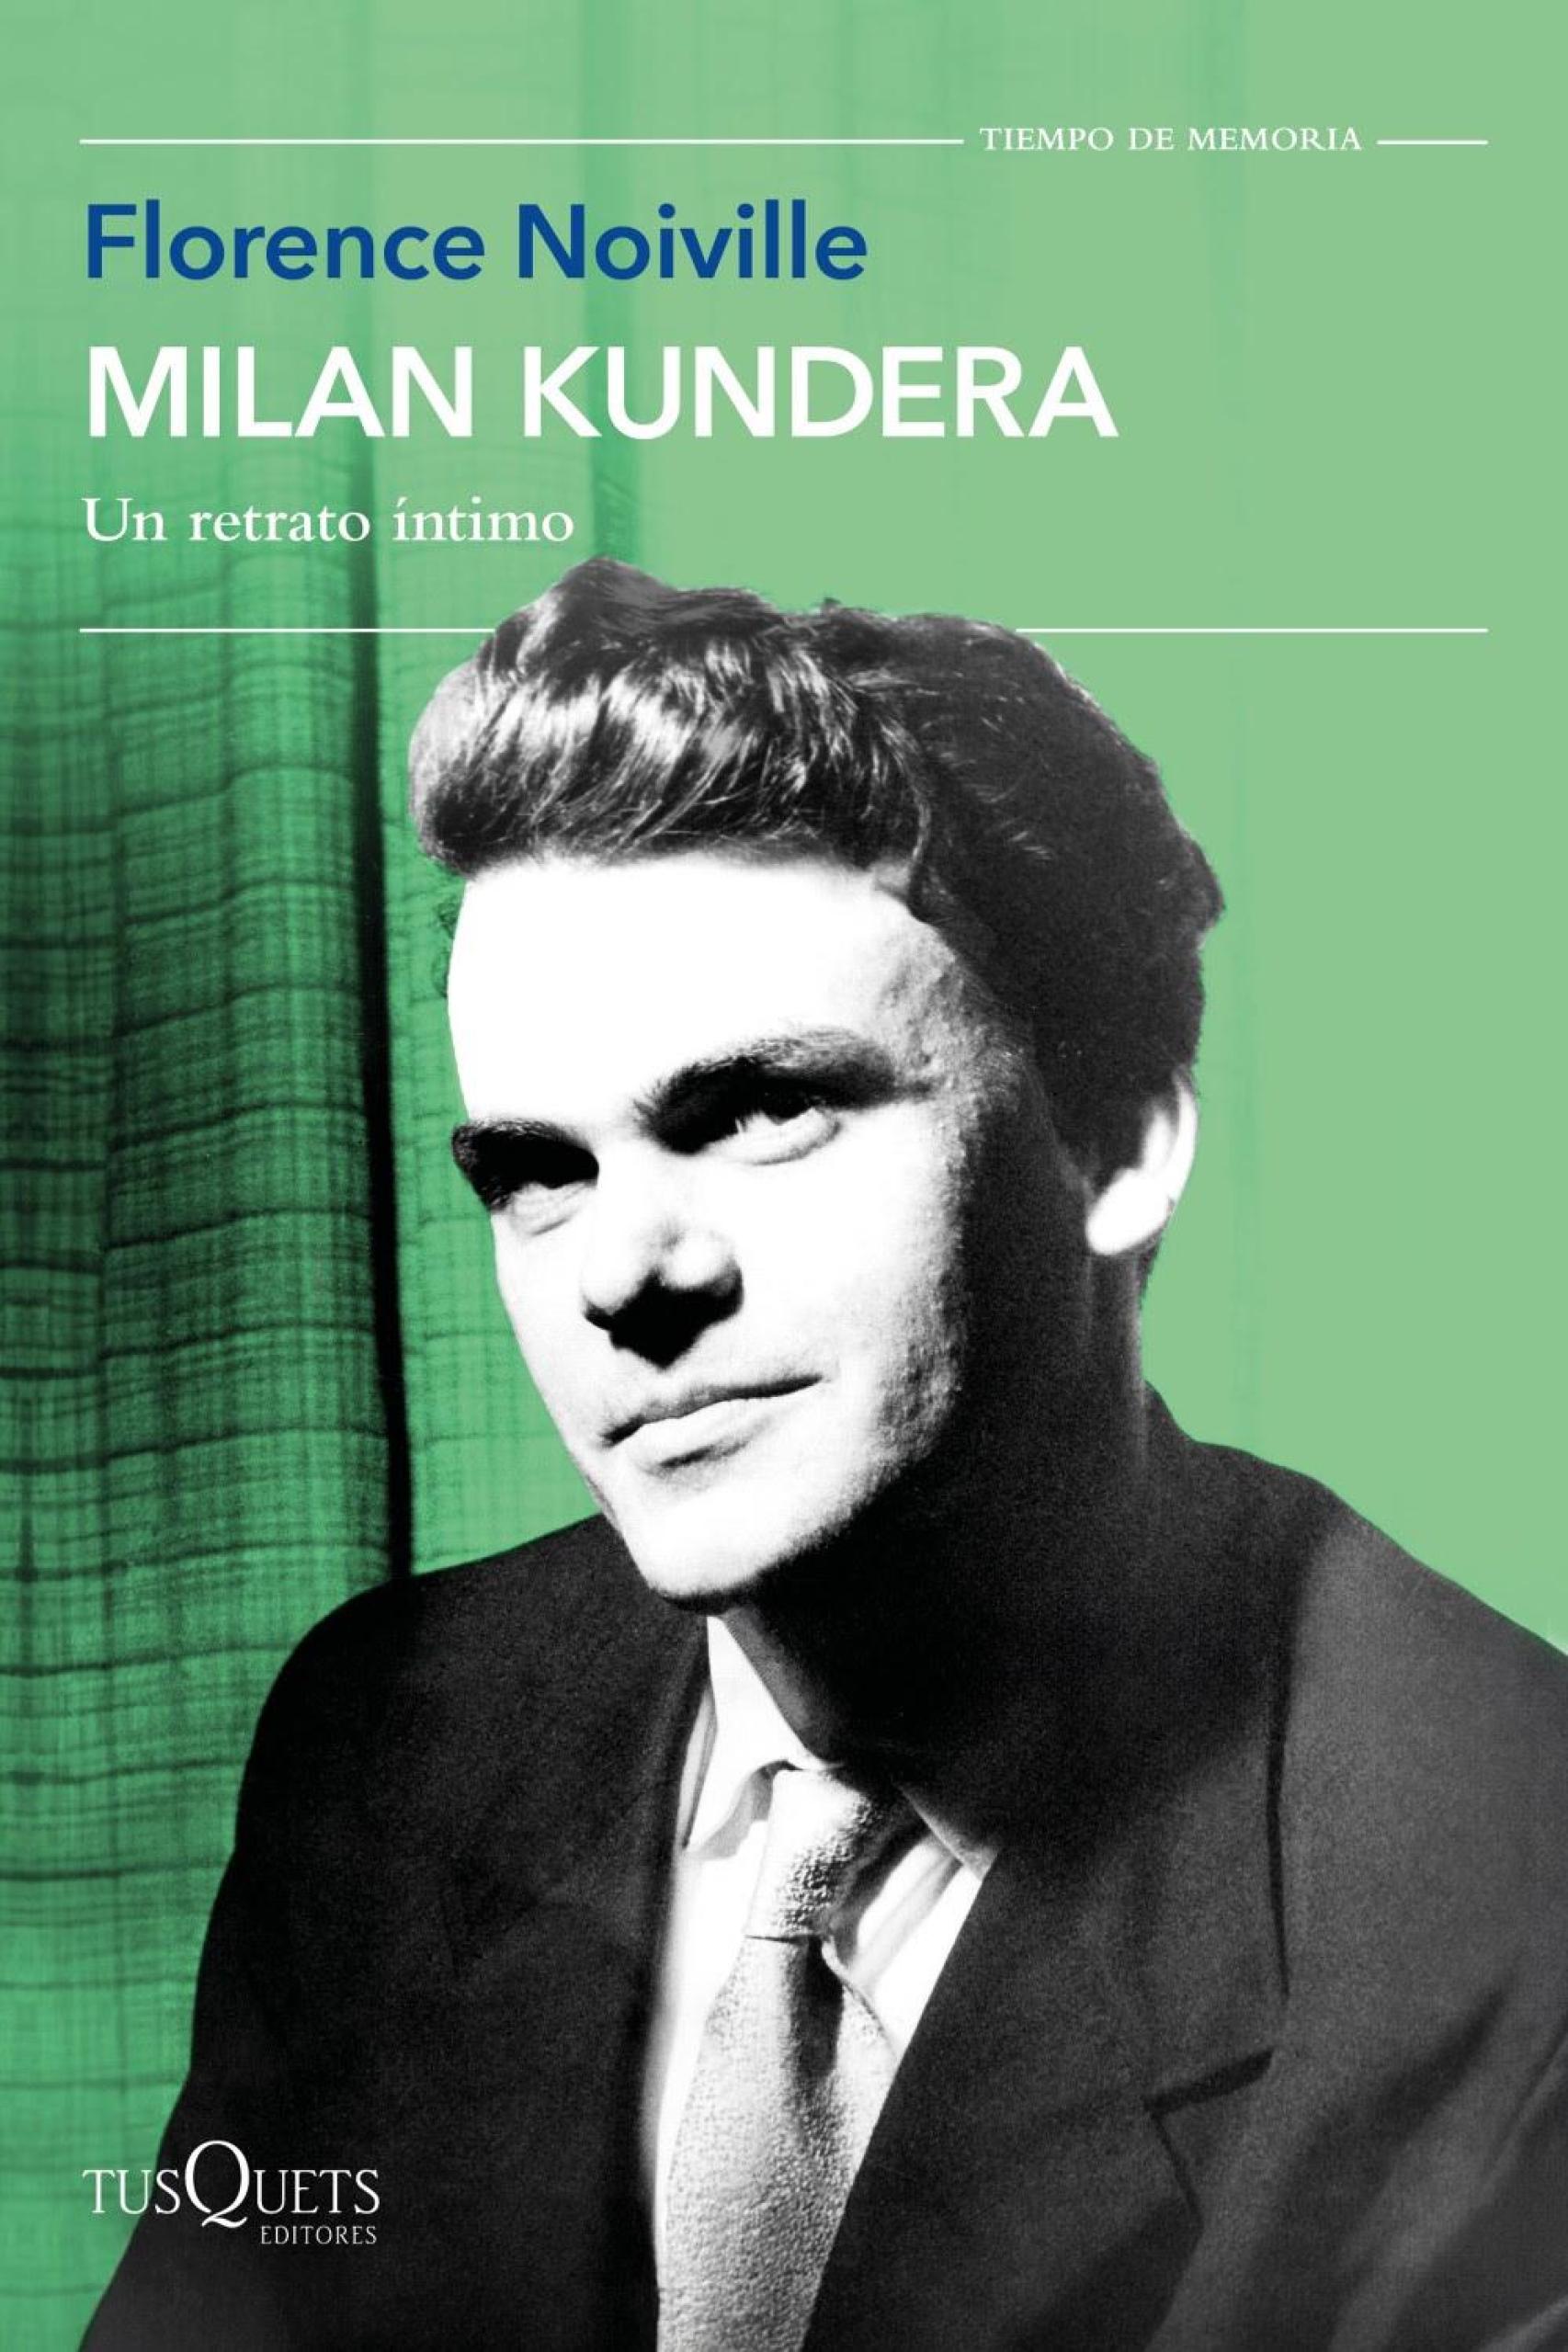 Portada de la edición española de 'Milan Kundera: Un retrato íntimo'. Foto: Tusquets Editores